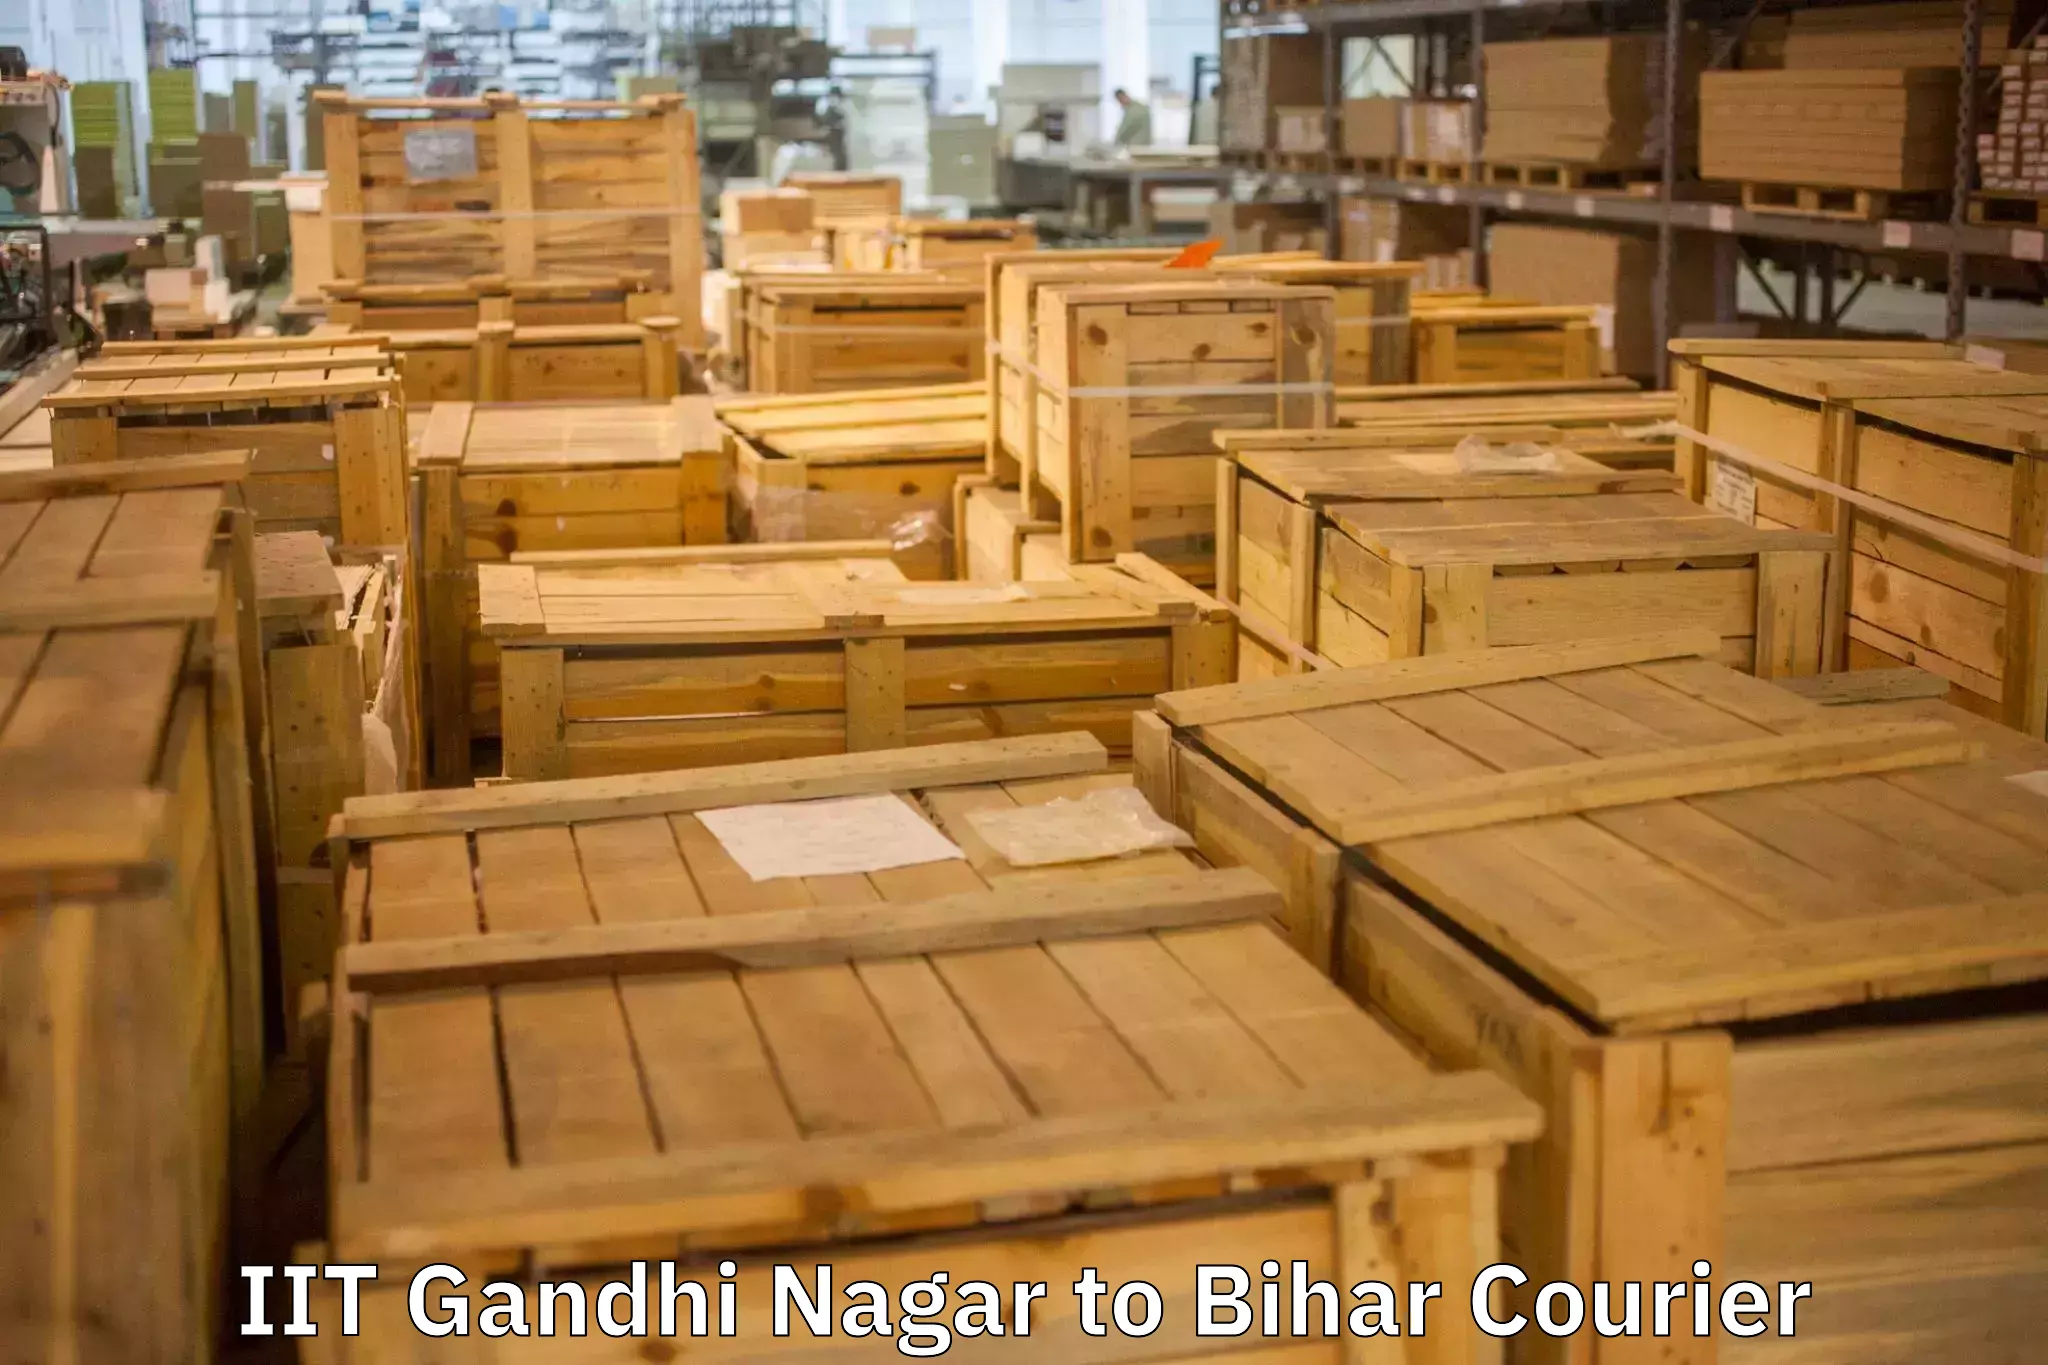 Furniture transport experts IIT Gandhi Nagar to Manjhaul